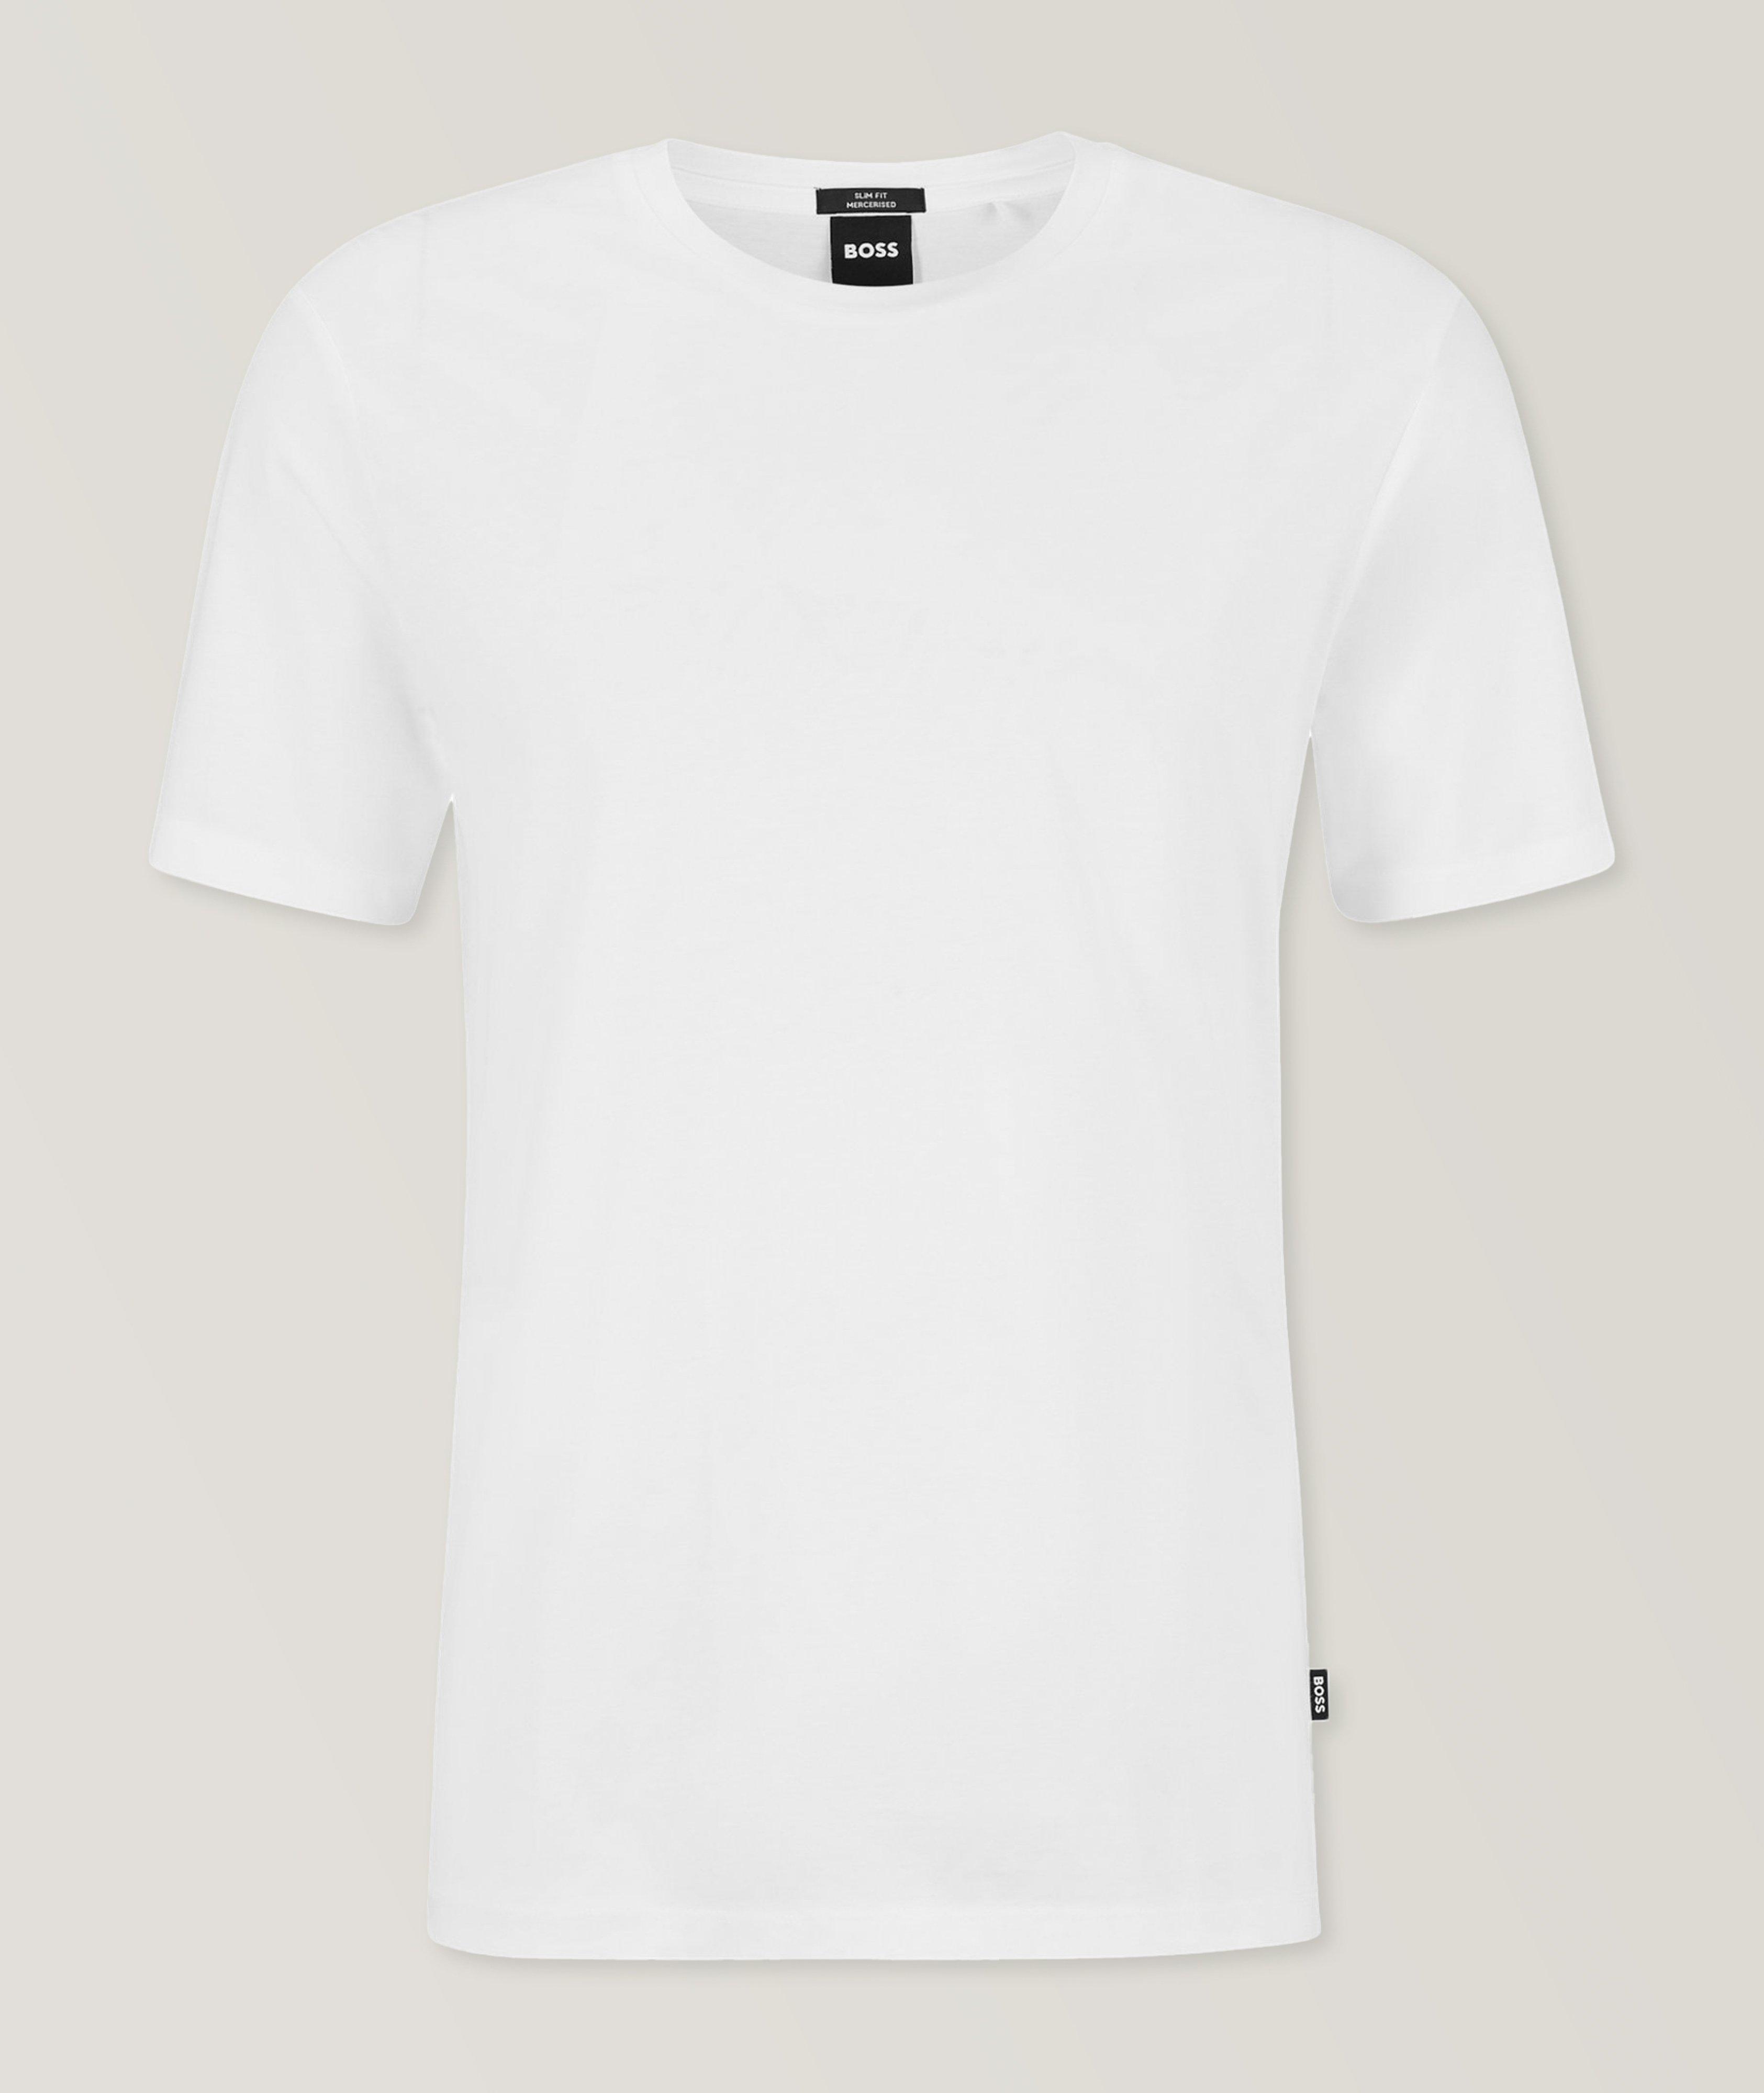 T-shirt Tessler en jersey de coton mercerisé image 0